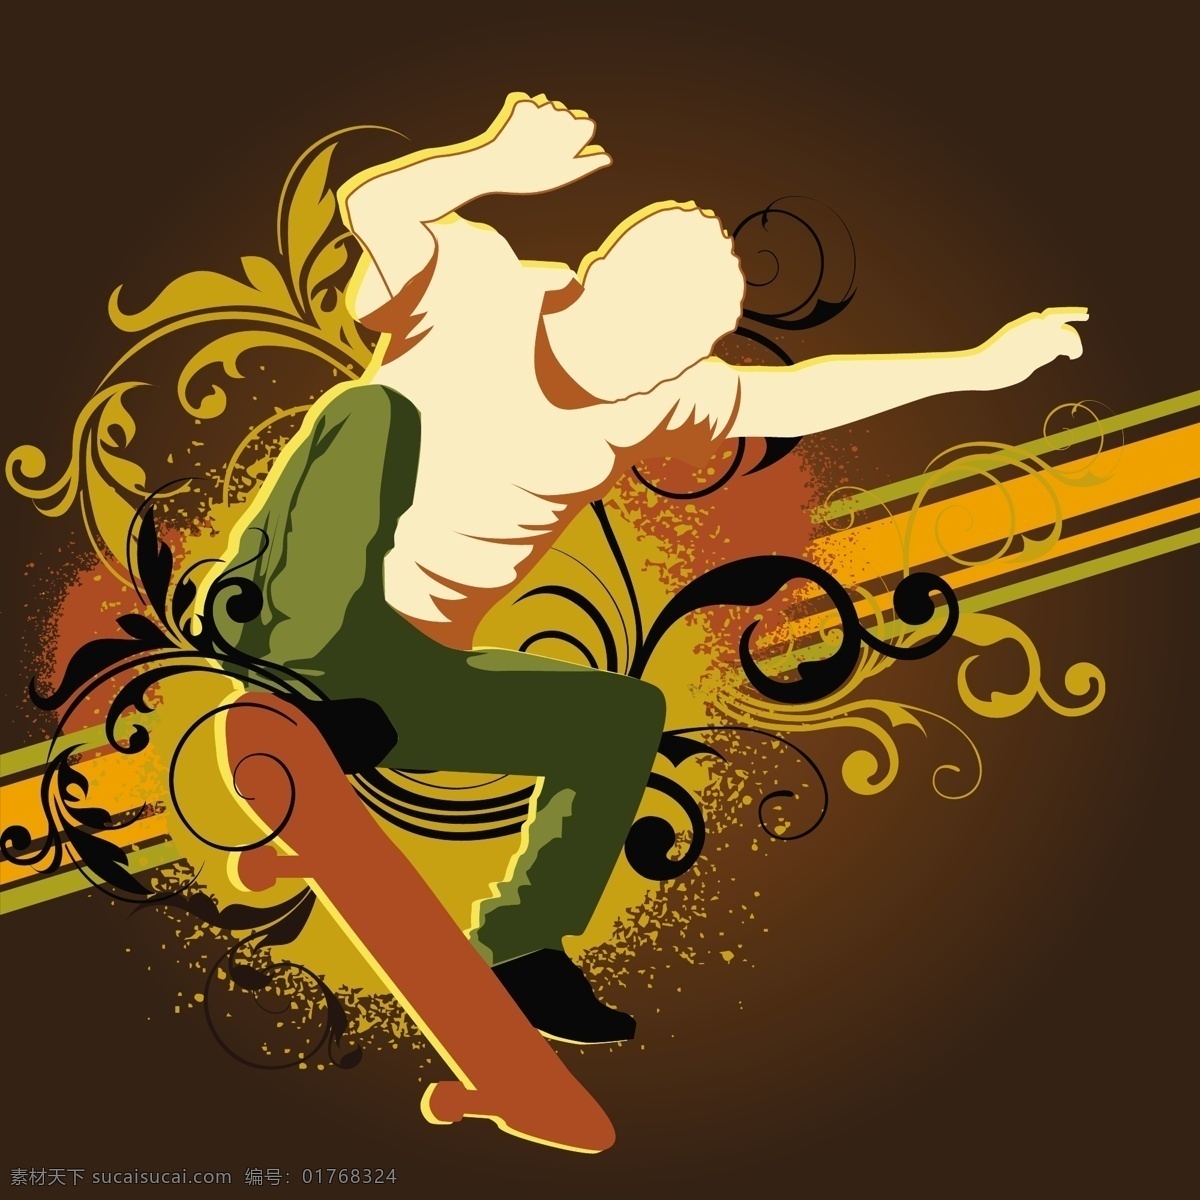 滑板背景设计 背景 抽象背景 抽象 墙纸 颜色 橙色 男孩 多彩的背景 橙色背景 滑板 滑冰 背景色 彩色